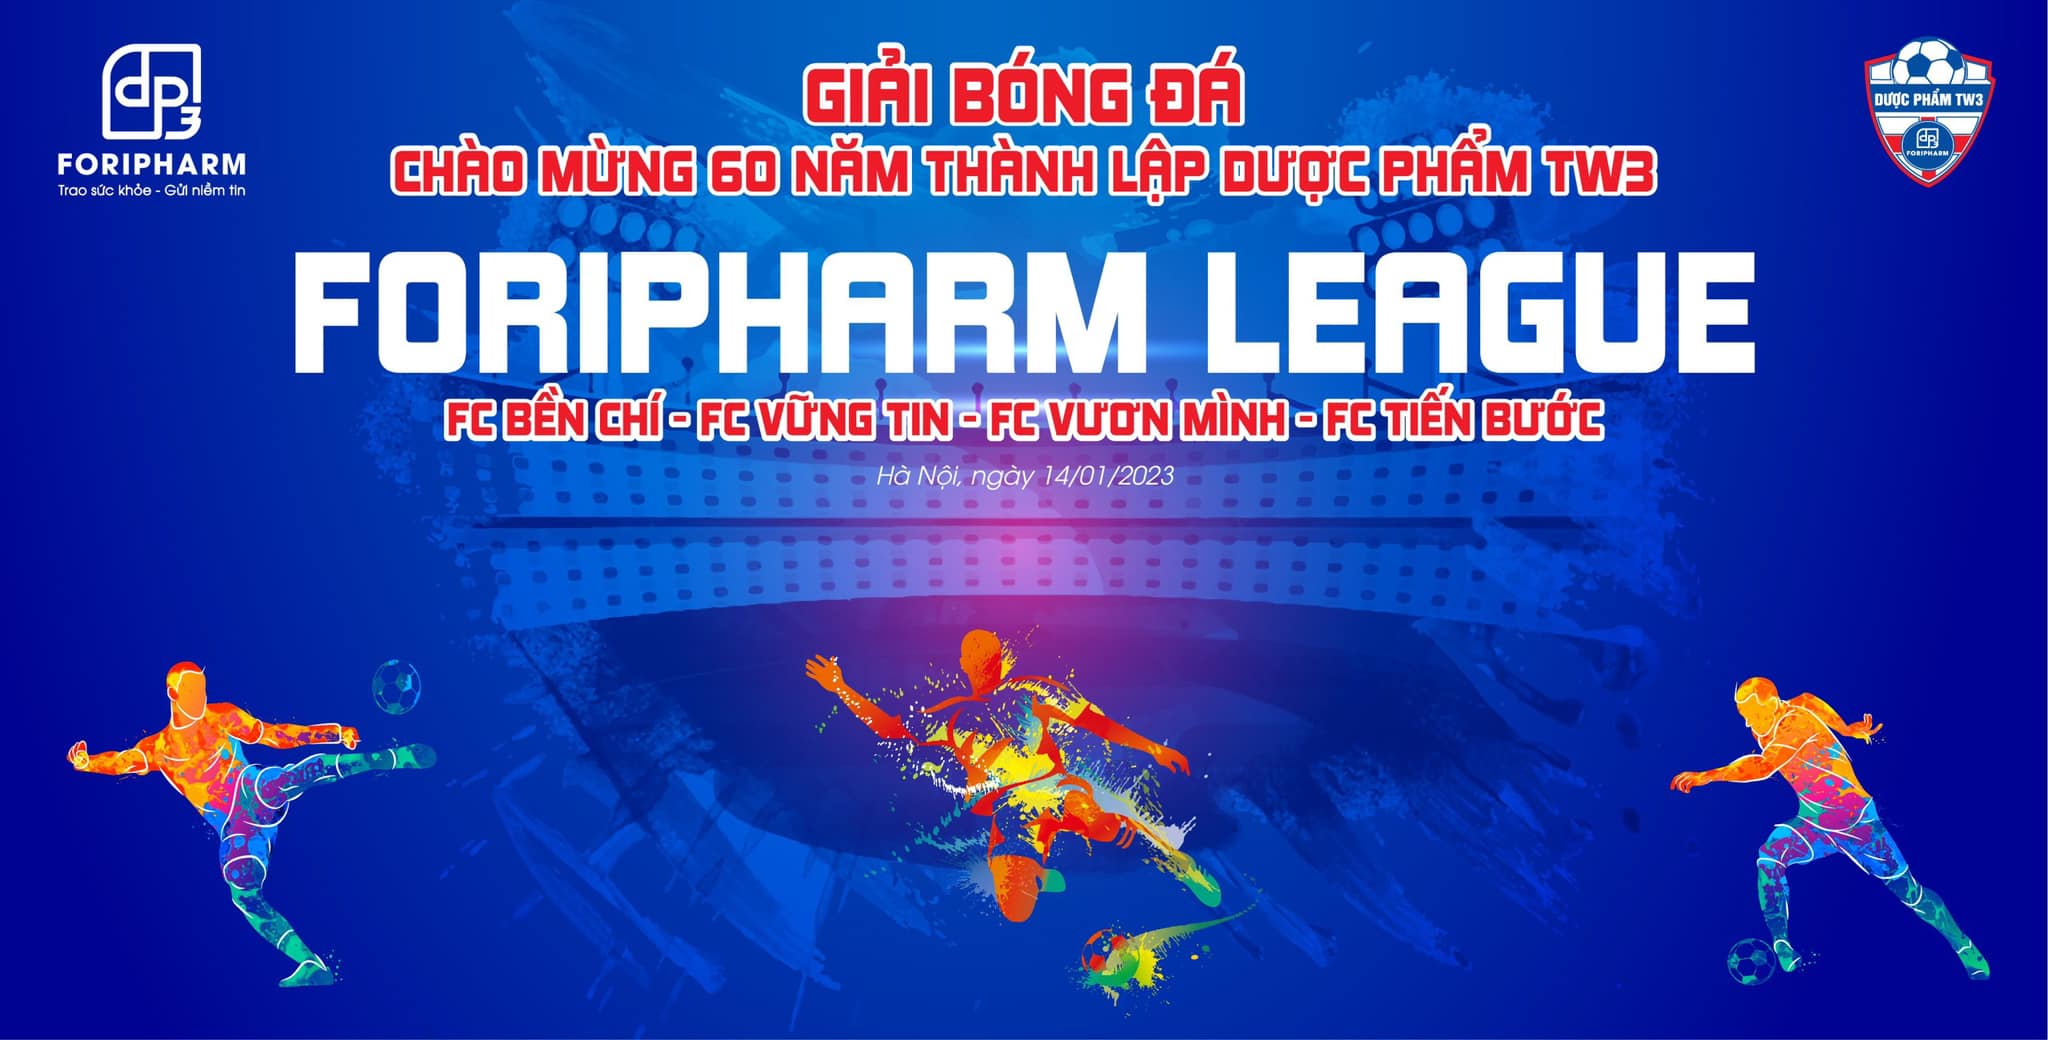 Giải bóng đá foripharm league